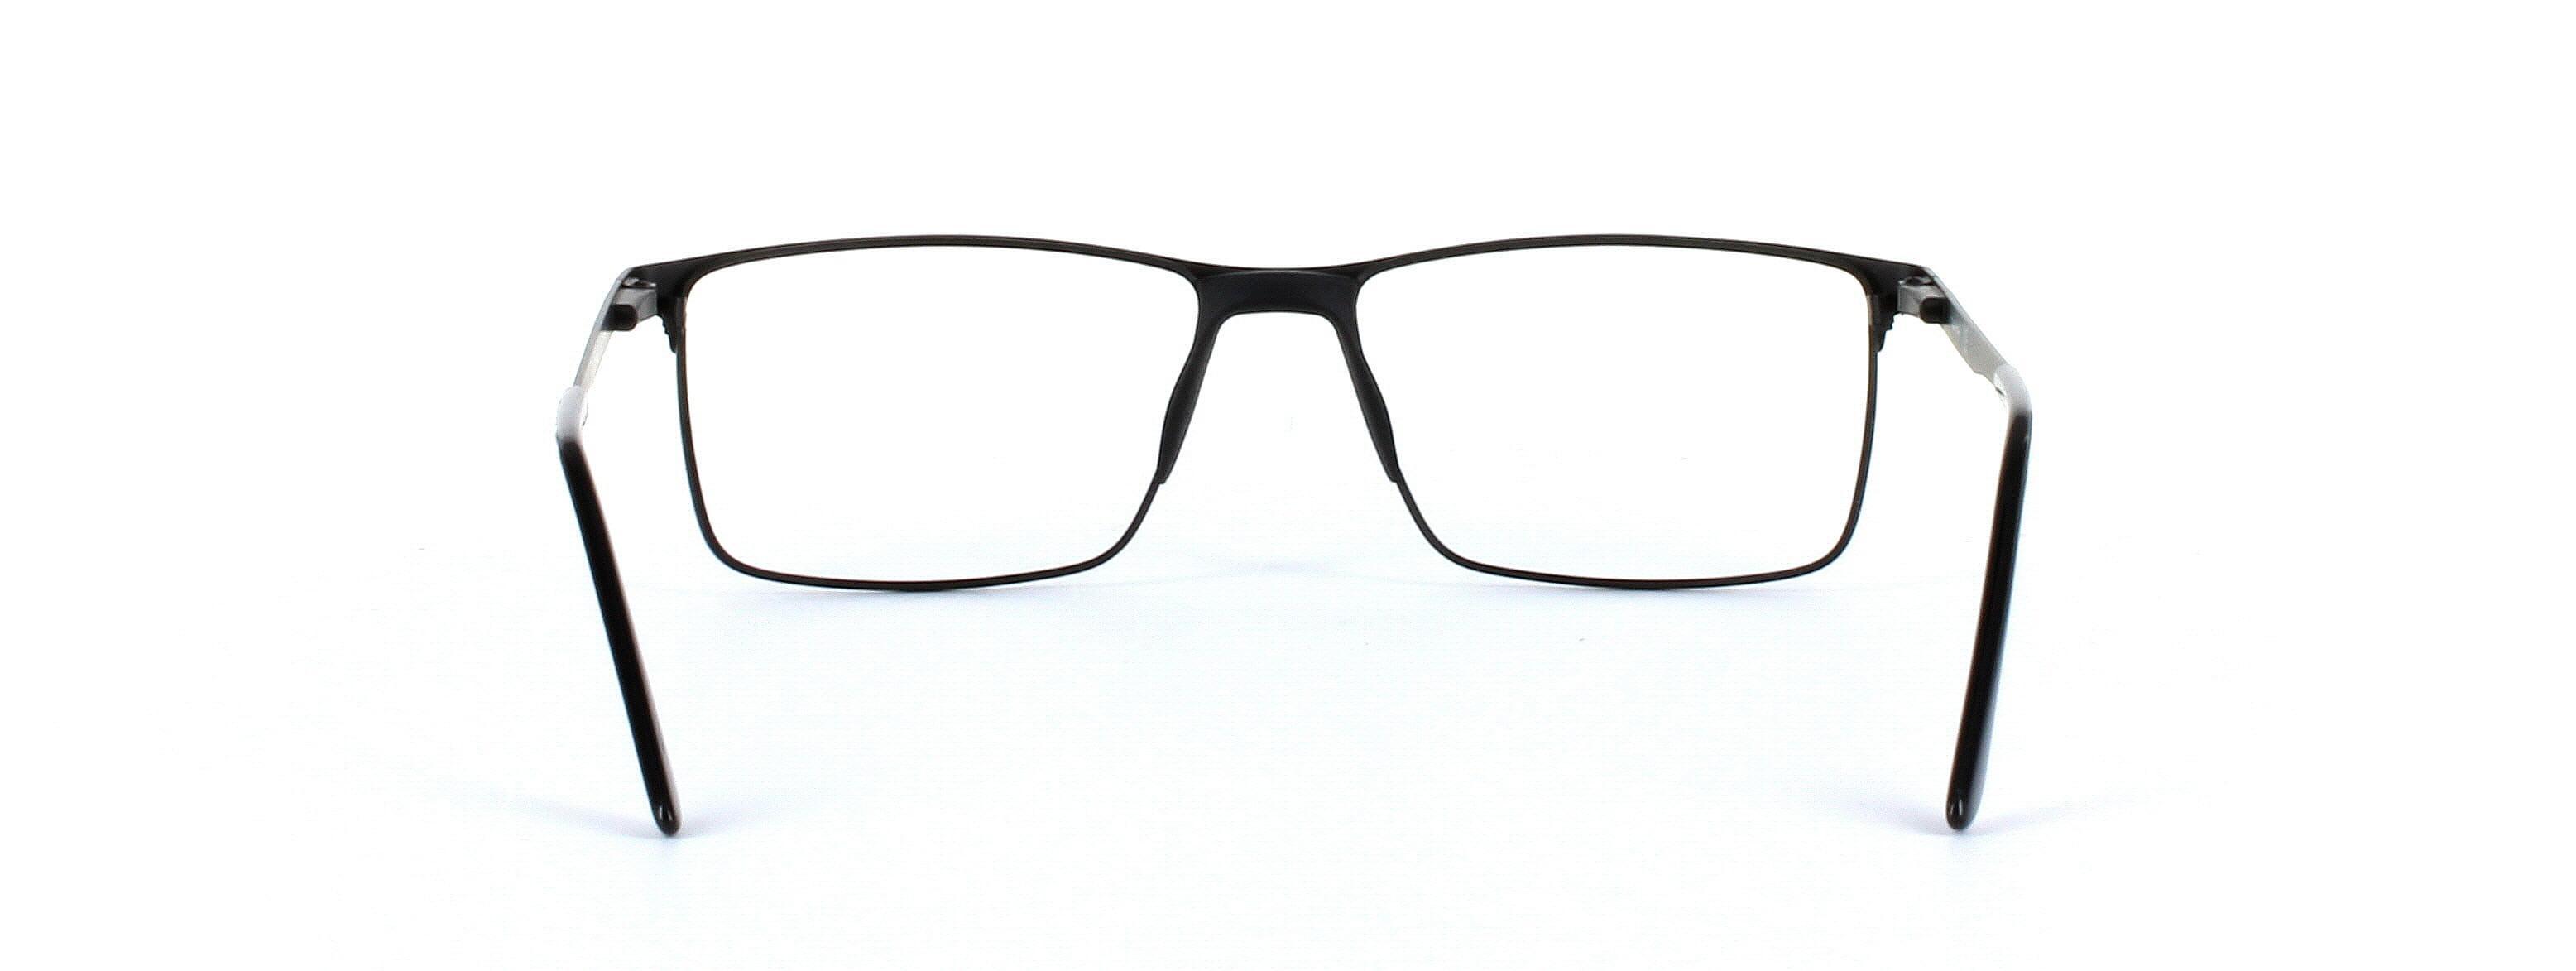 Burnaby Black Full Rim Rectangular Metal Glasses - Image View 3